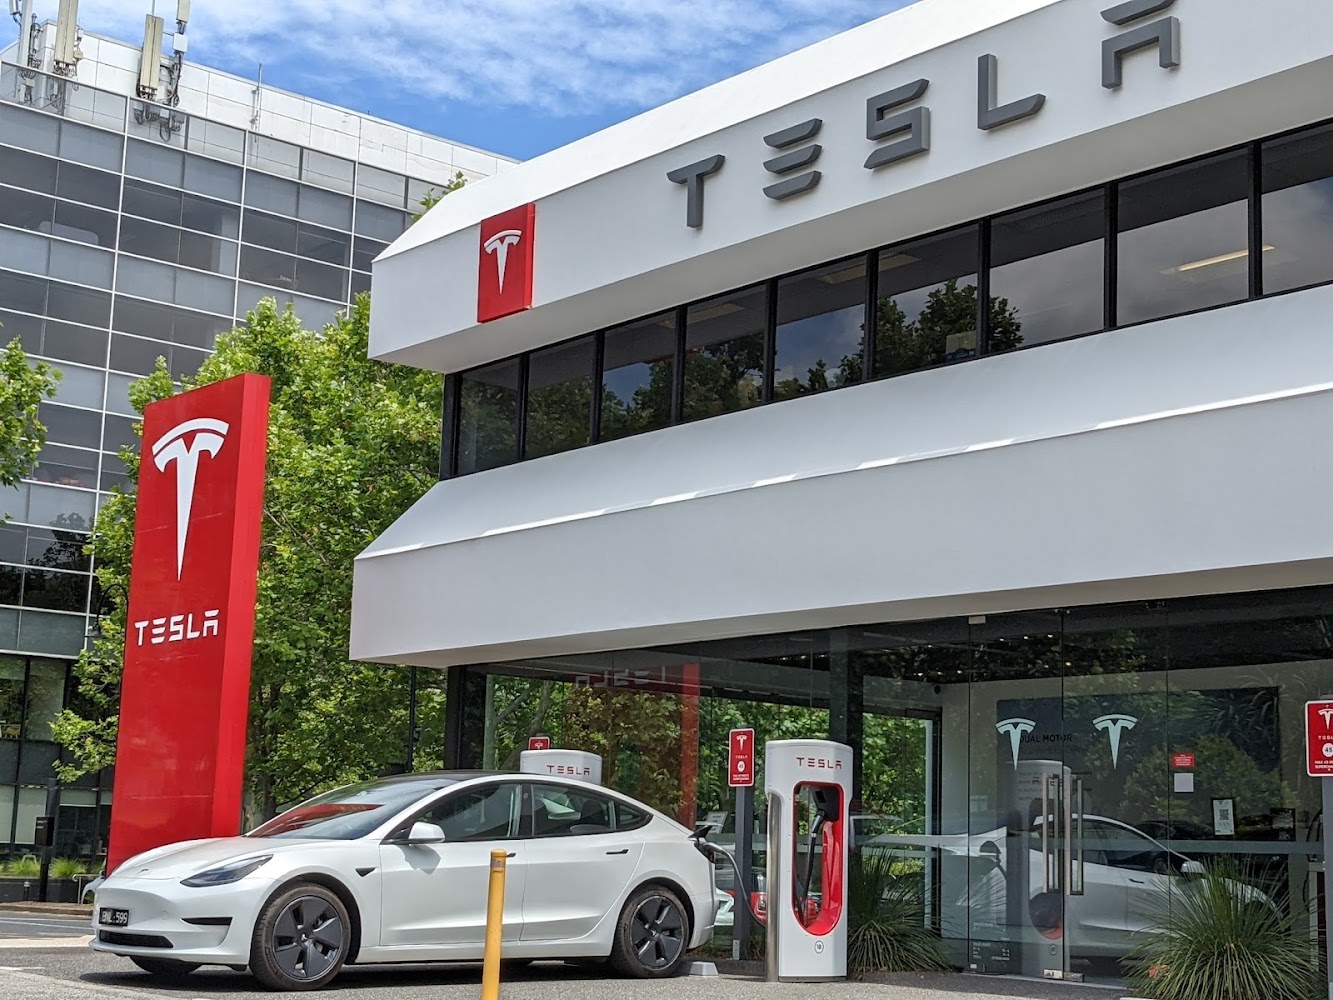 Tesla Melbourne